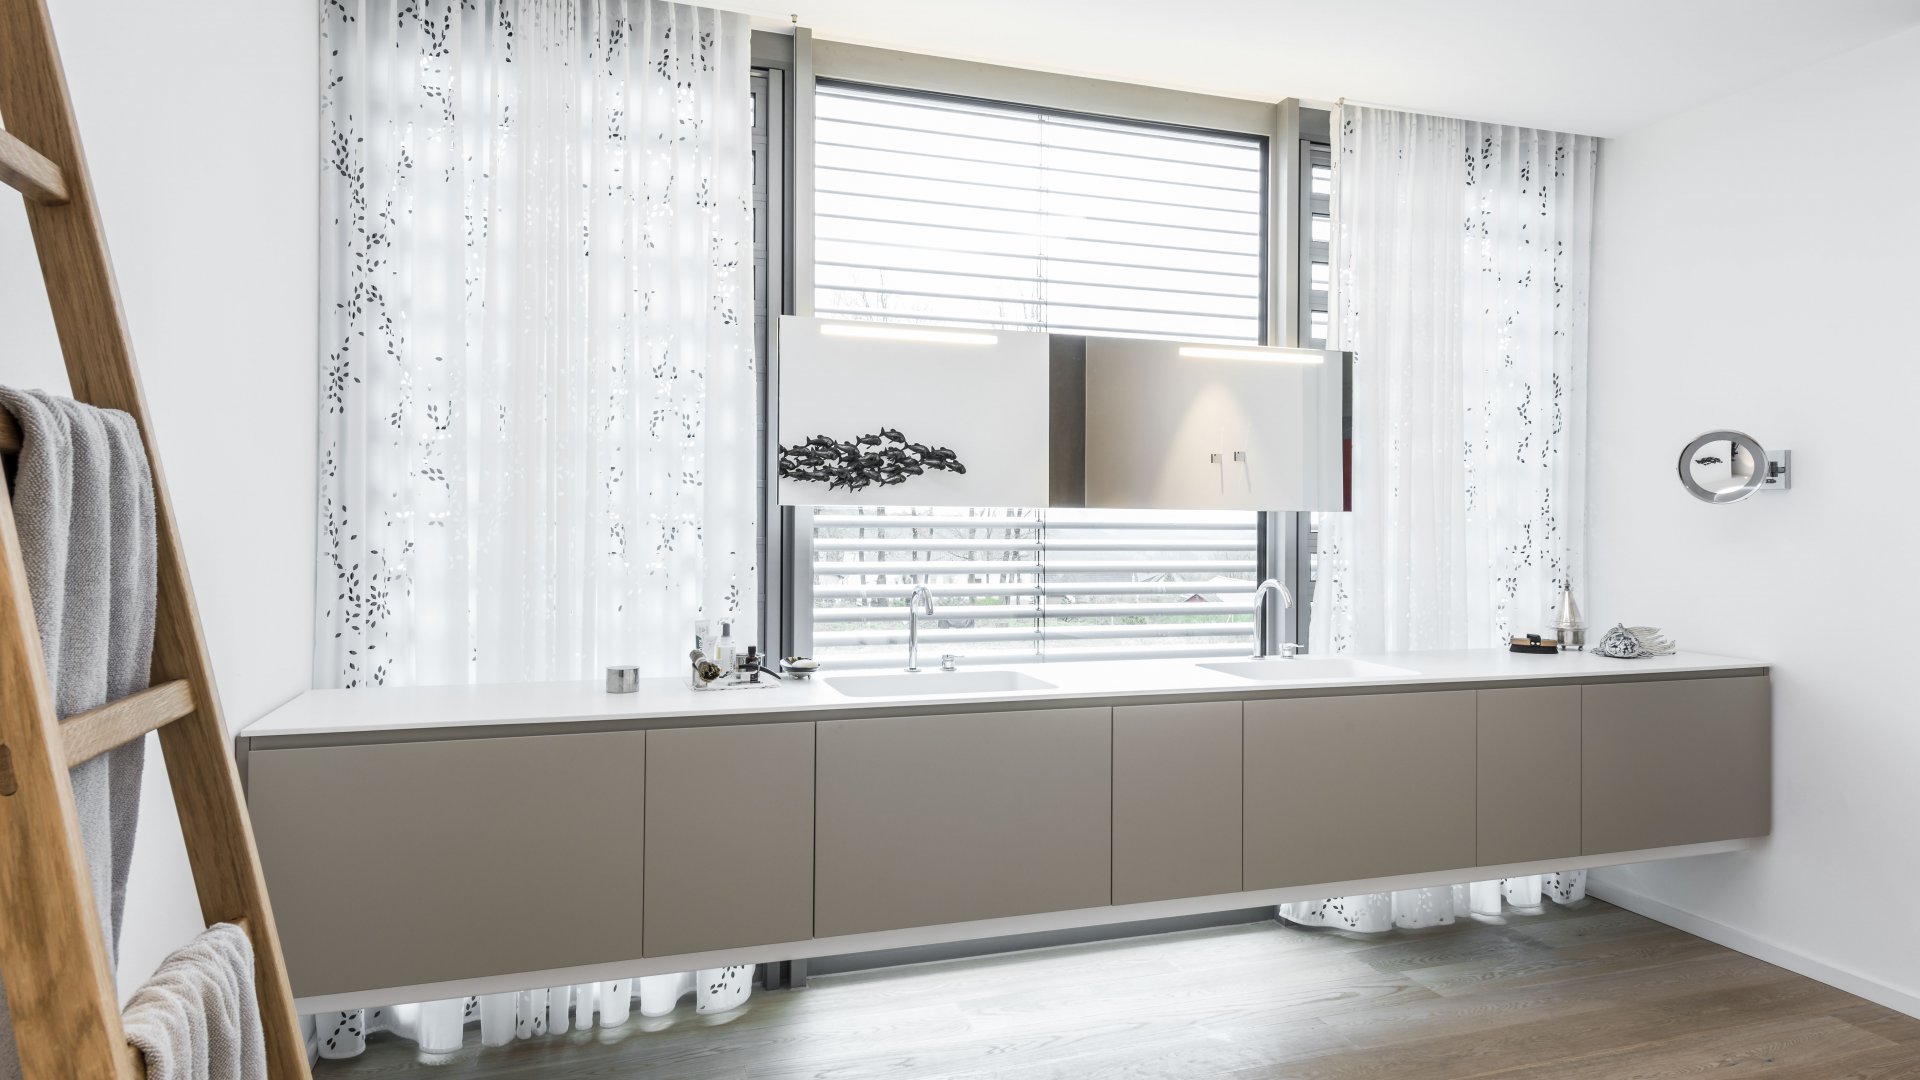 Waschtischanlage aus mattweißem Corian, Handtuchleiter aus Holz, Waschtisch vor Fenster, Vorhang, hängender Spiegel beleuchtet